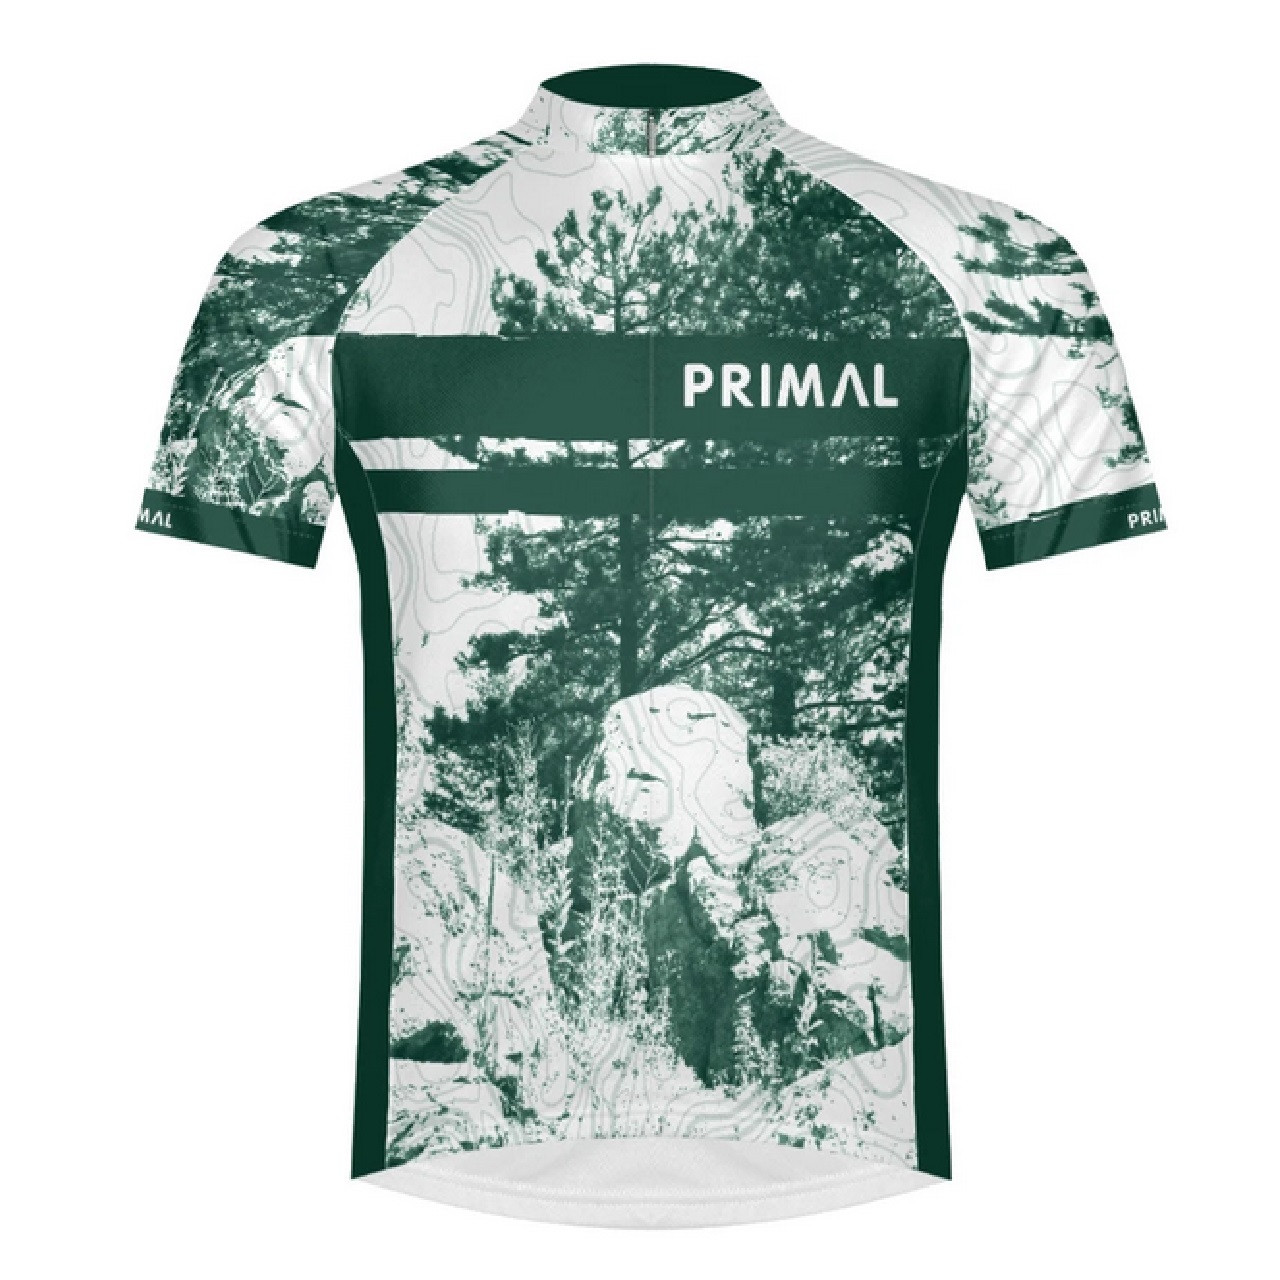 Primal Wear Trailblaze Cycling Jersey $75